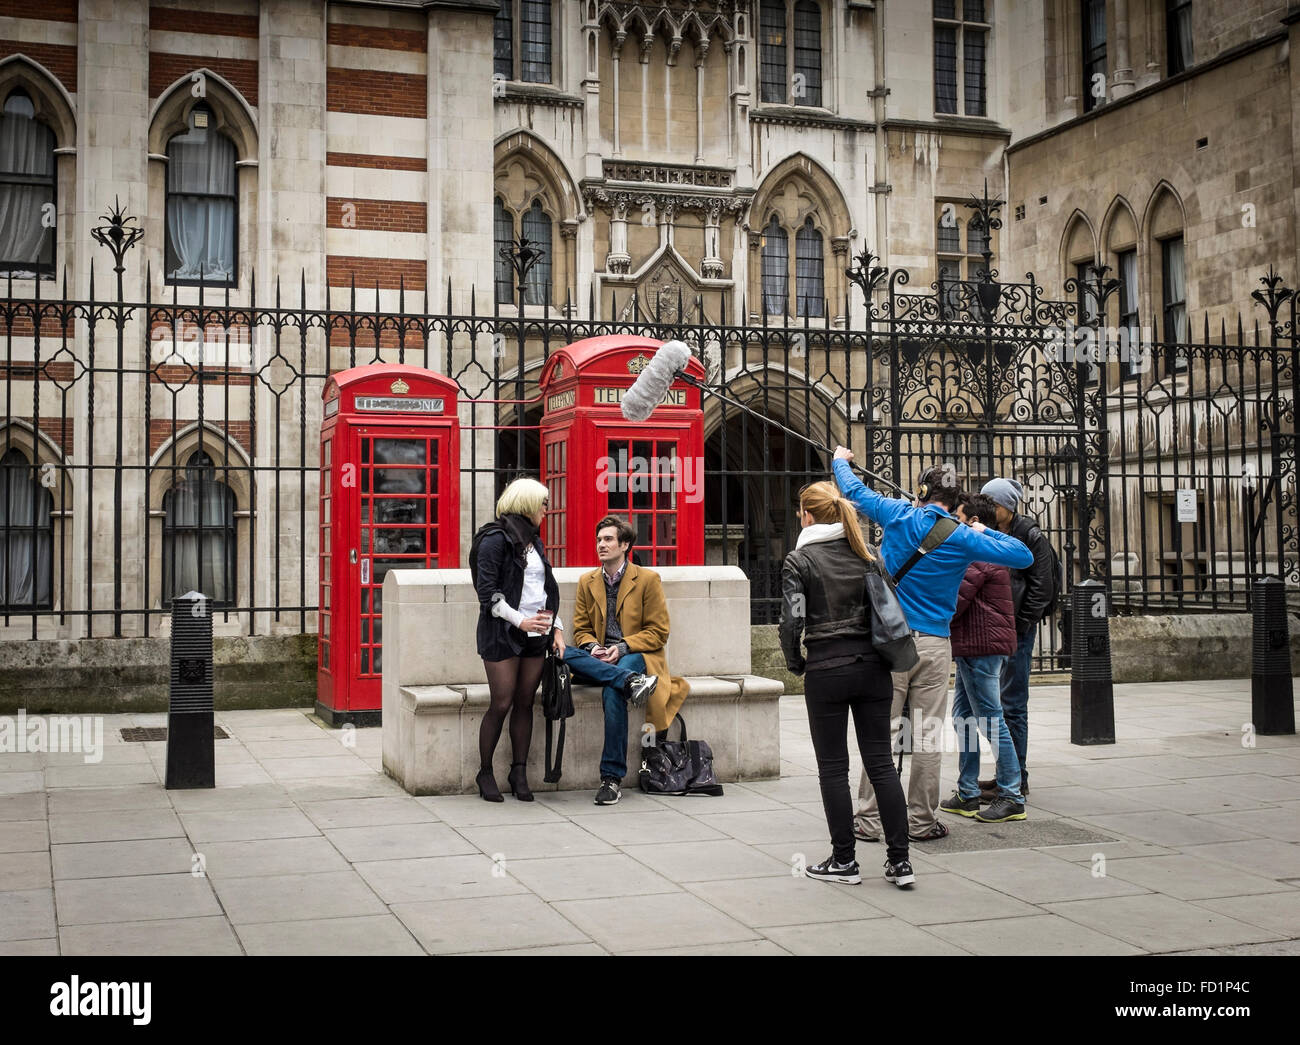 Filming scene in the street of London, UK Stock Photo